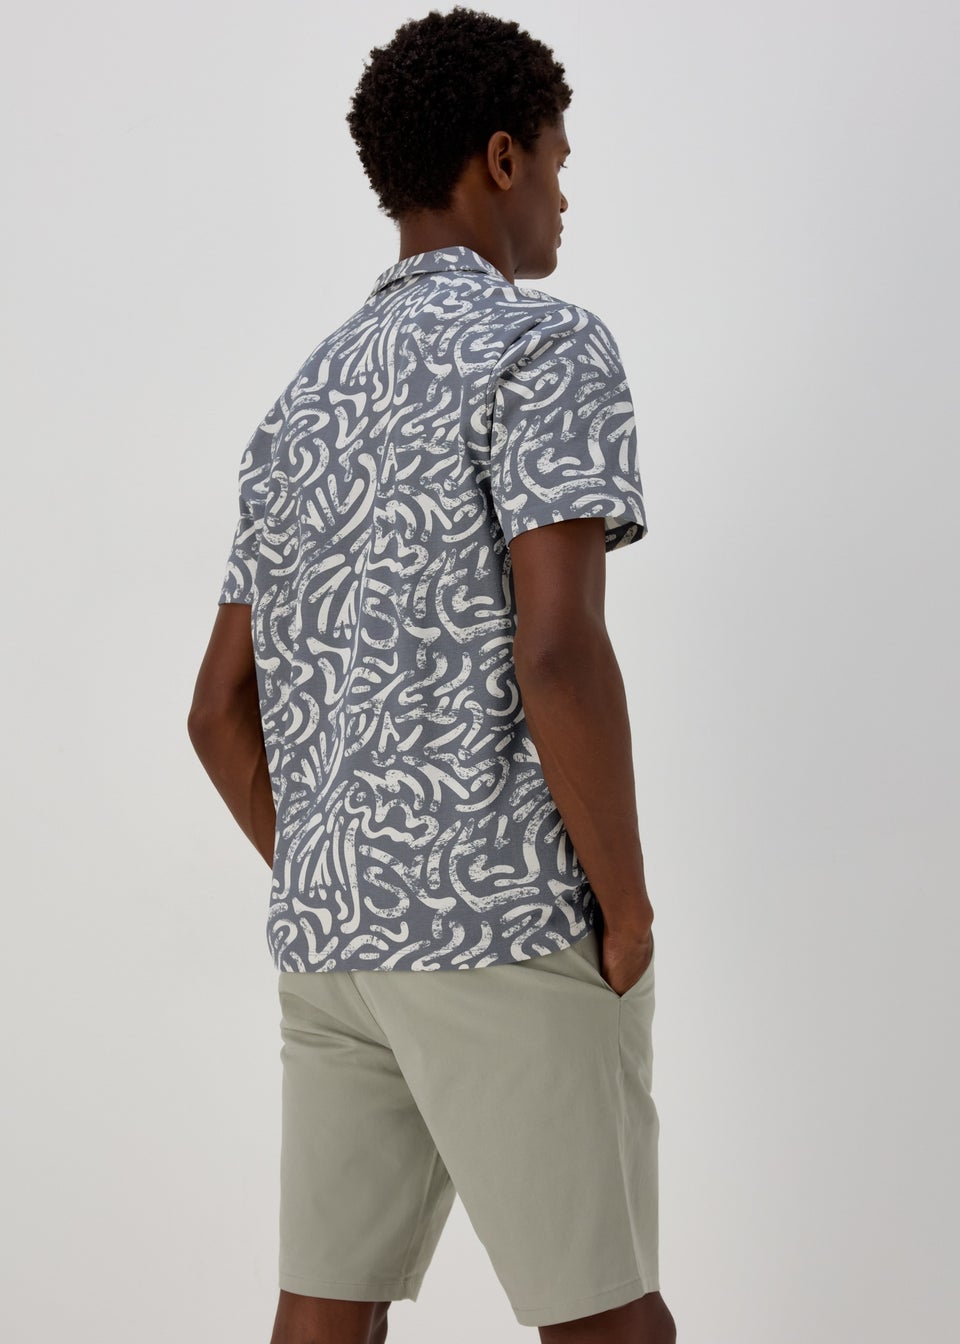 Blue & White Short-Sleeved Swirl Print Shirt